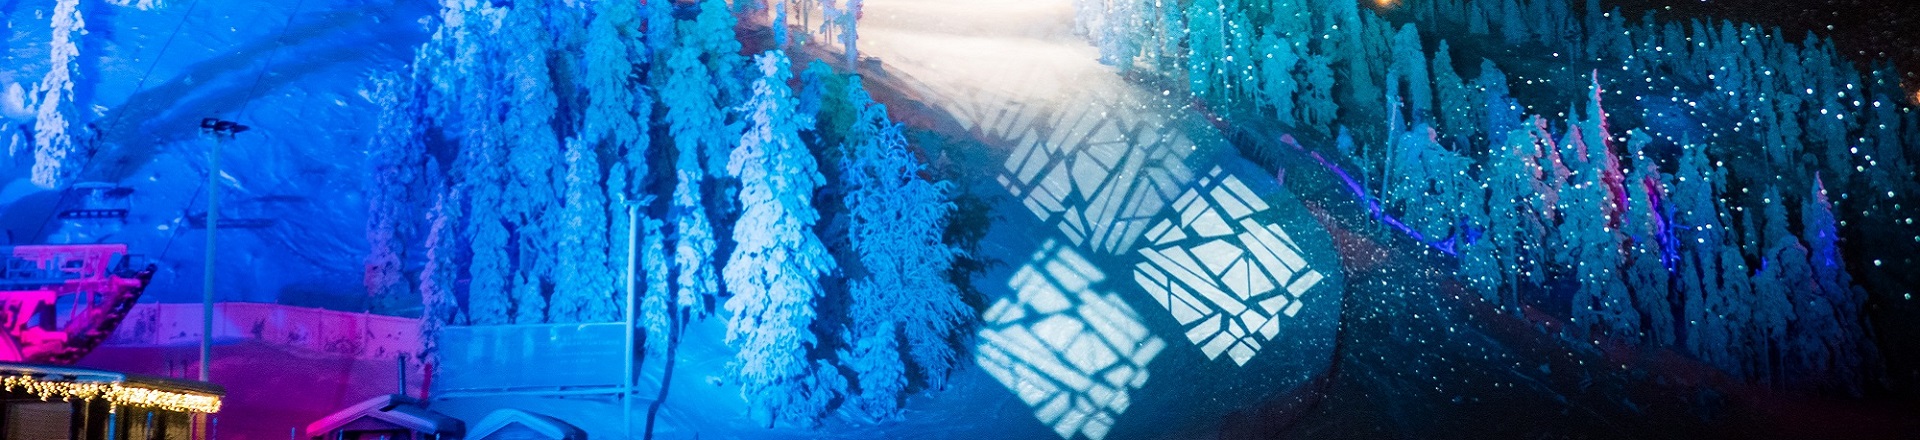 Instalacje oświetleniowe na dalekiej północy: Sun Effects z Finlandii i Proteus od Elation